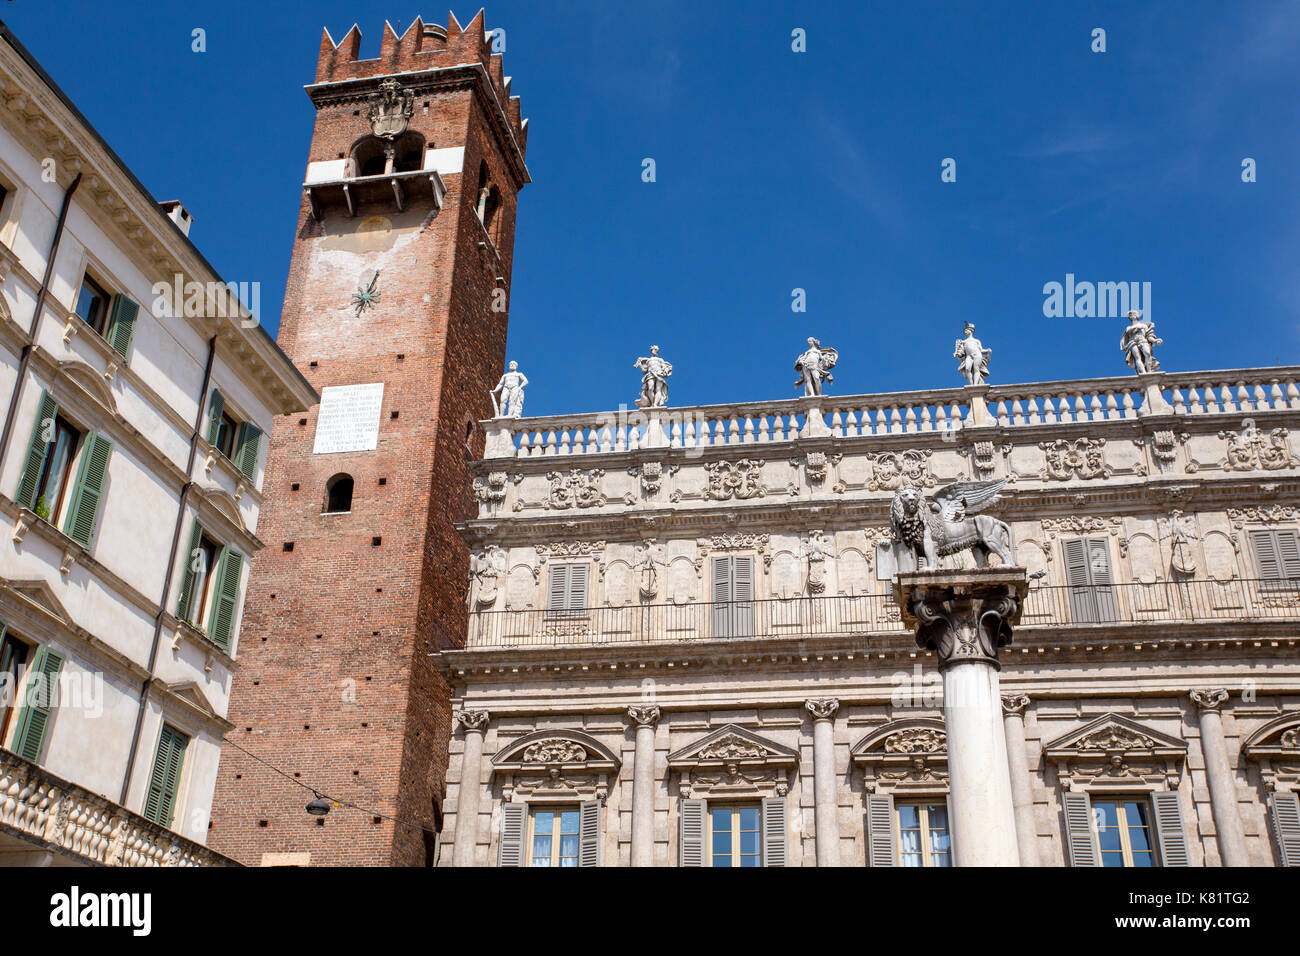 Piazza Delle Erbe and Colonna di San Marco, Verona, Italy Stock Photo